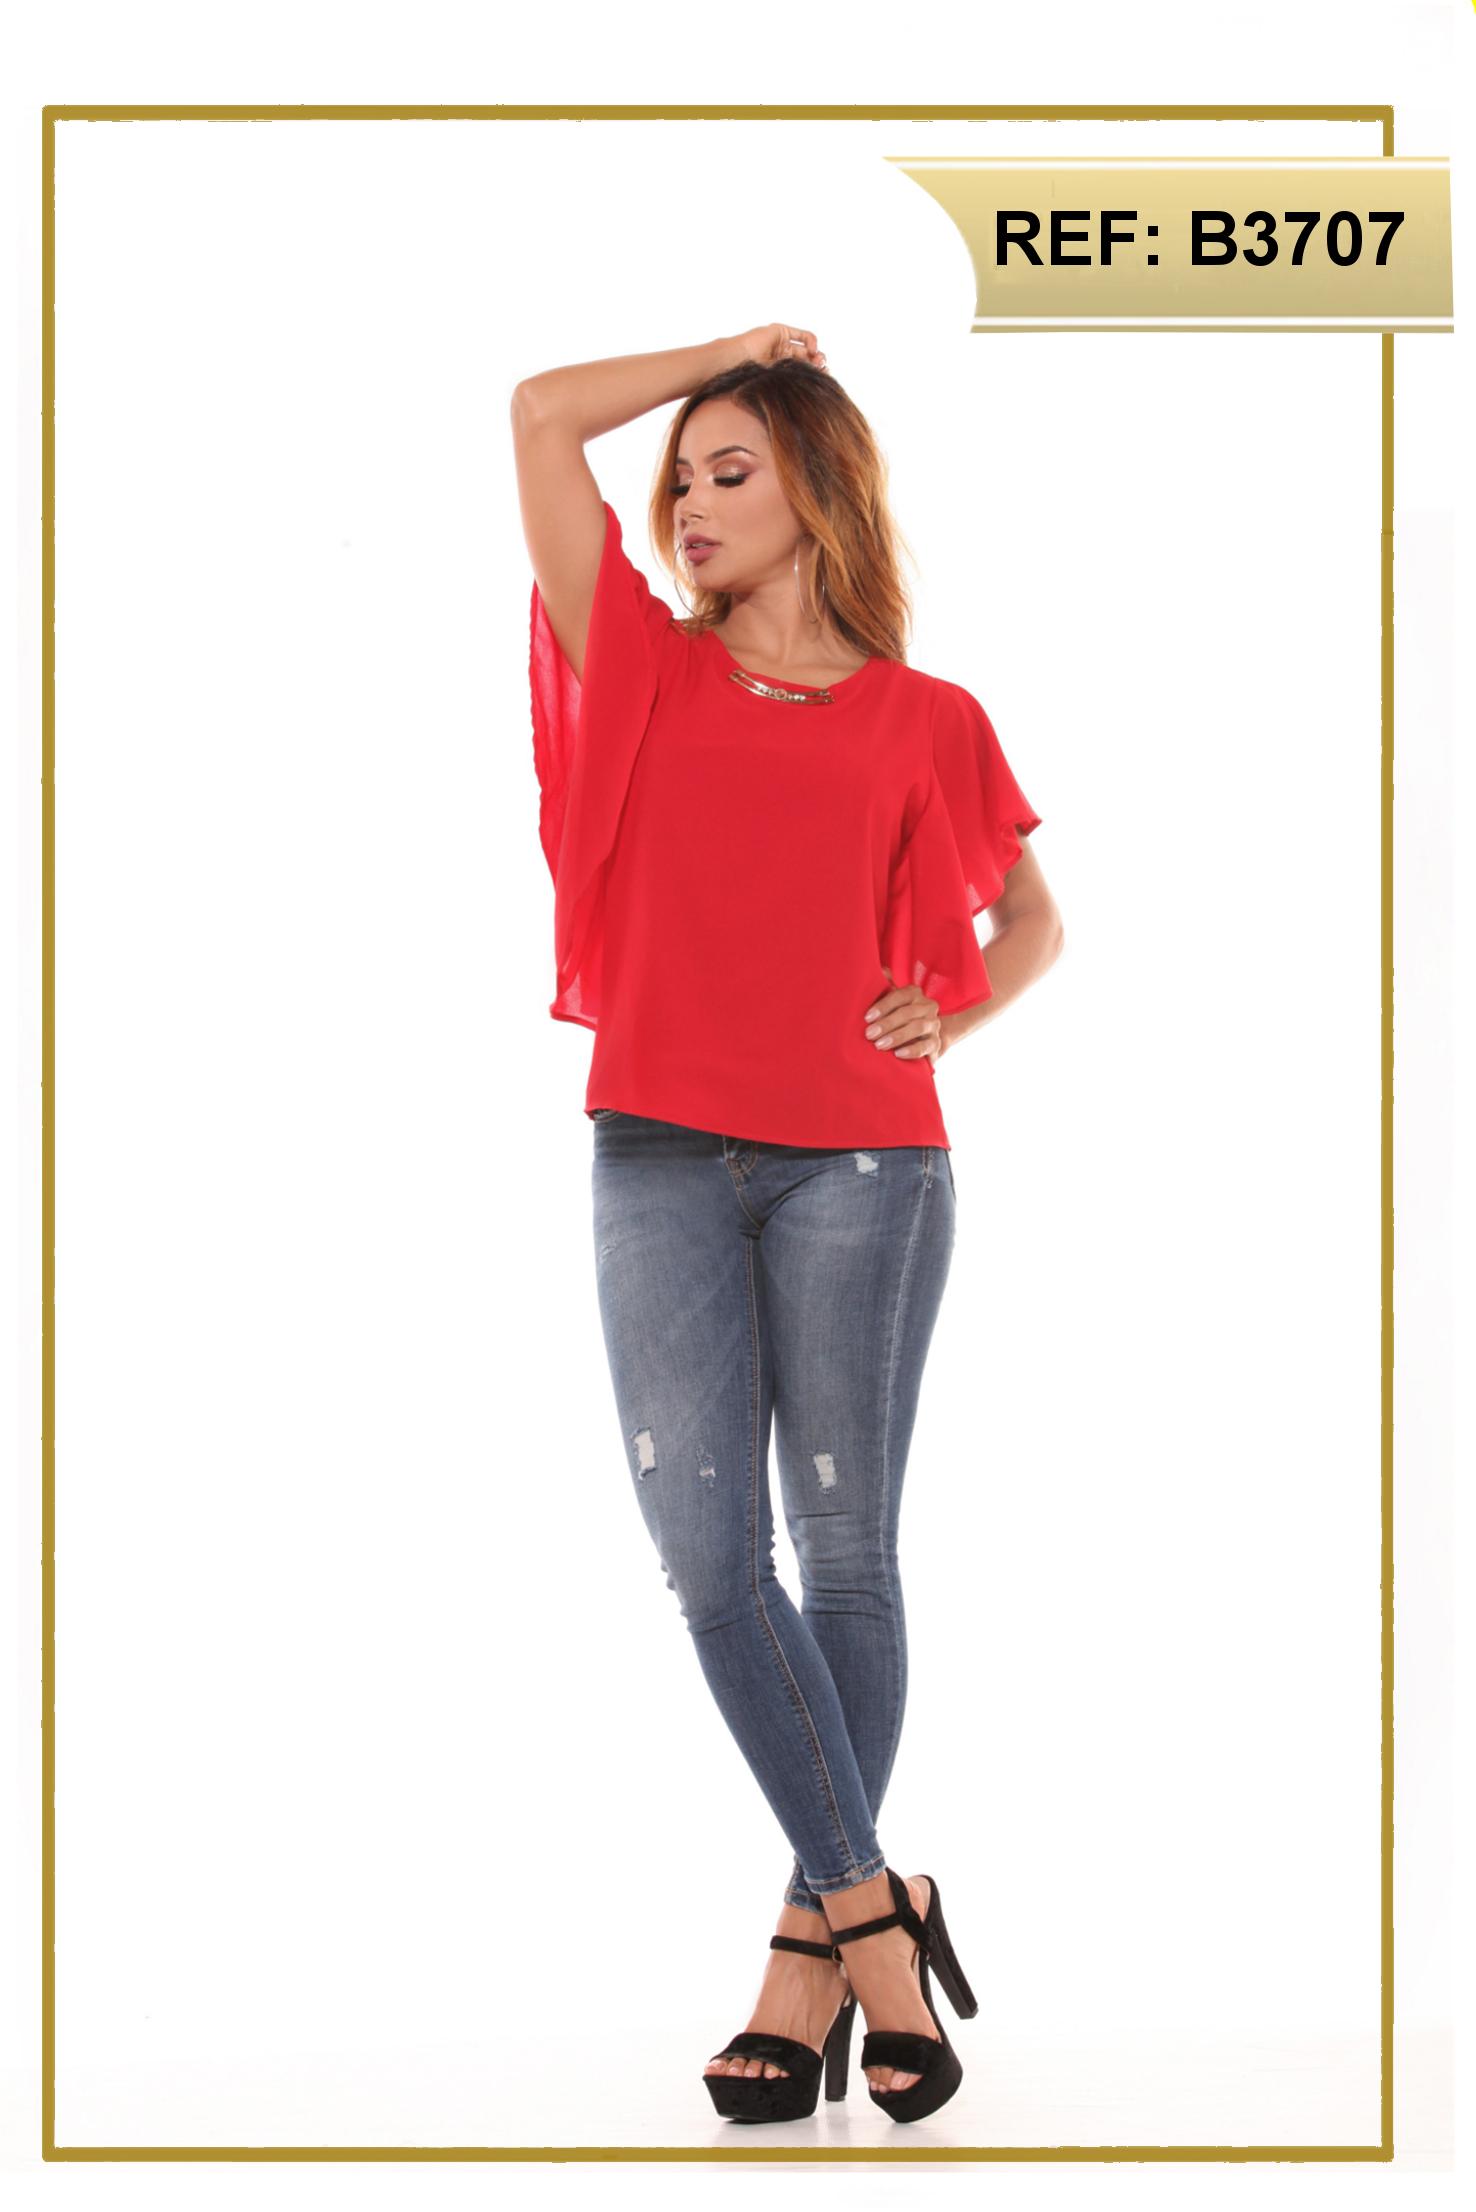 Blusa Colombiana de Dama con mangas cortas y anchas que le dan un hermoso toque a tu estilo original